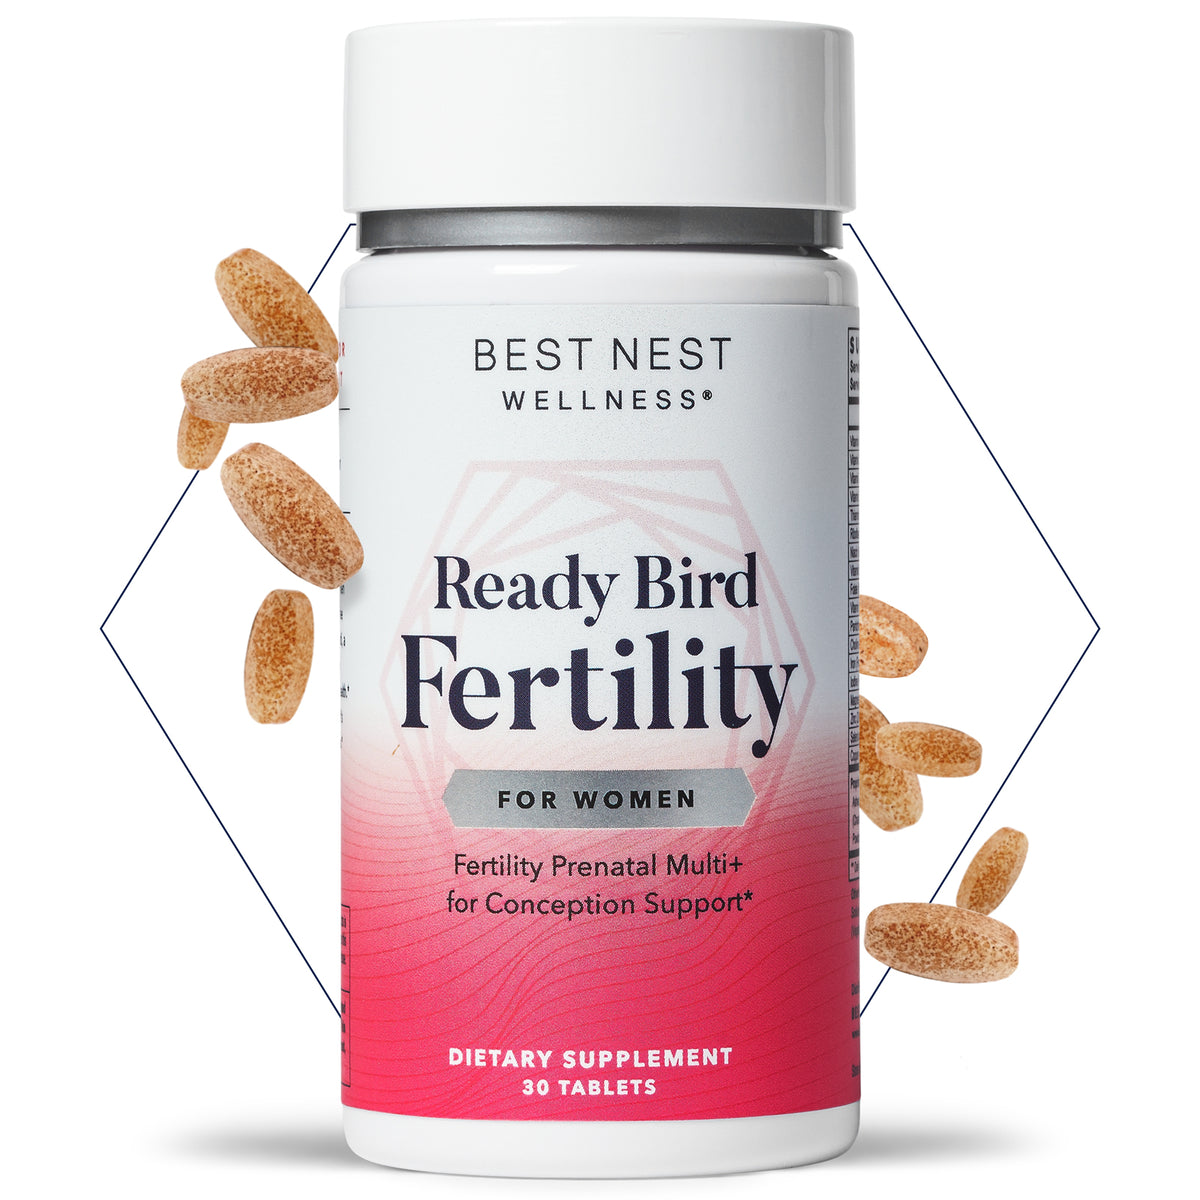 Ready Bird Women's Fertility